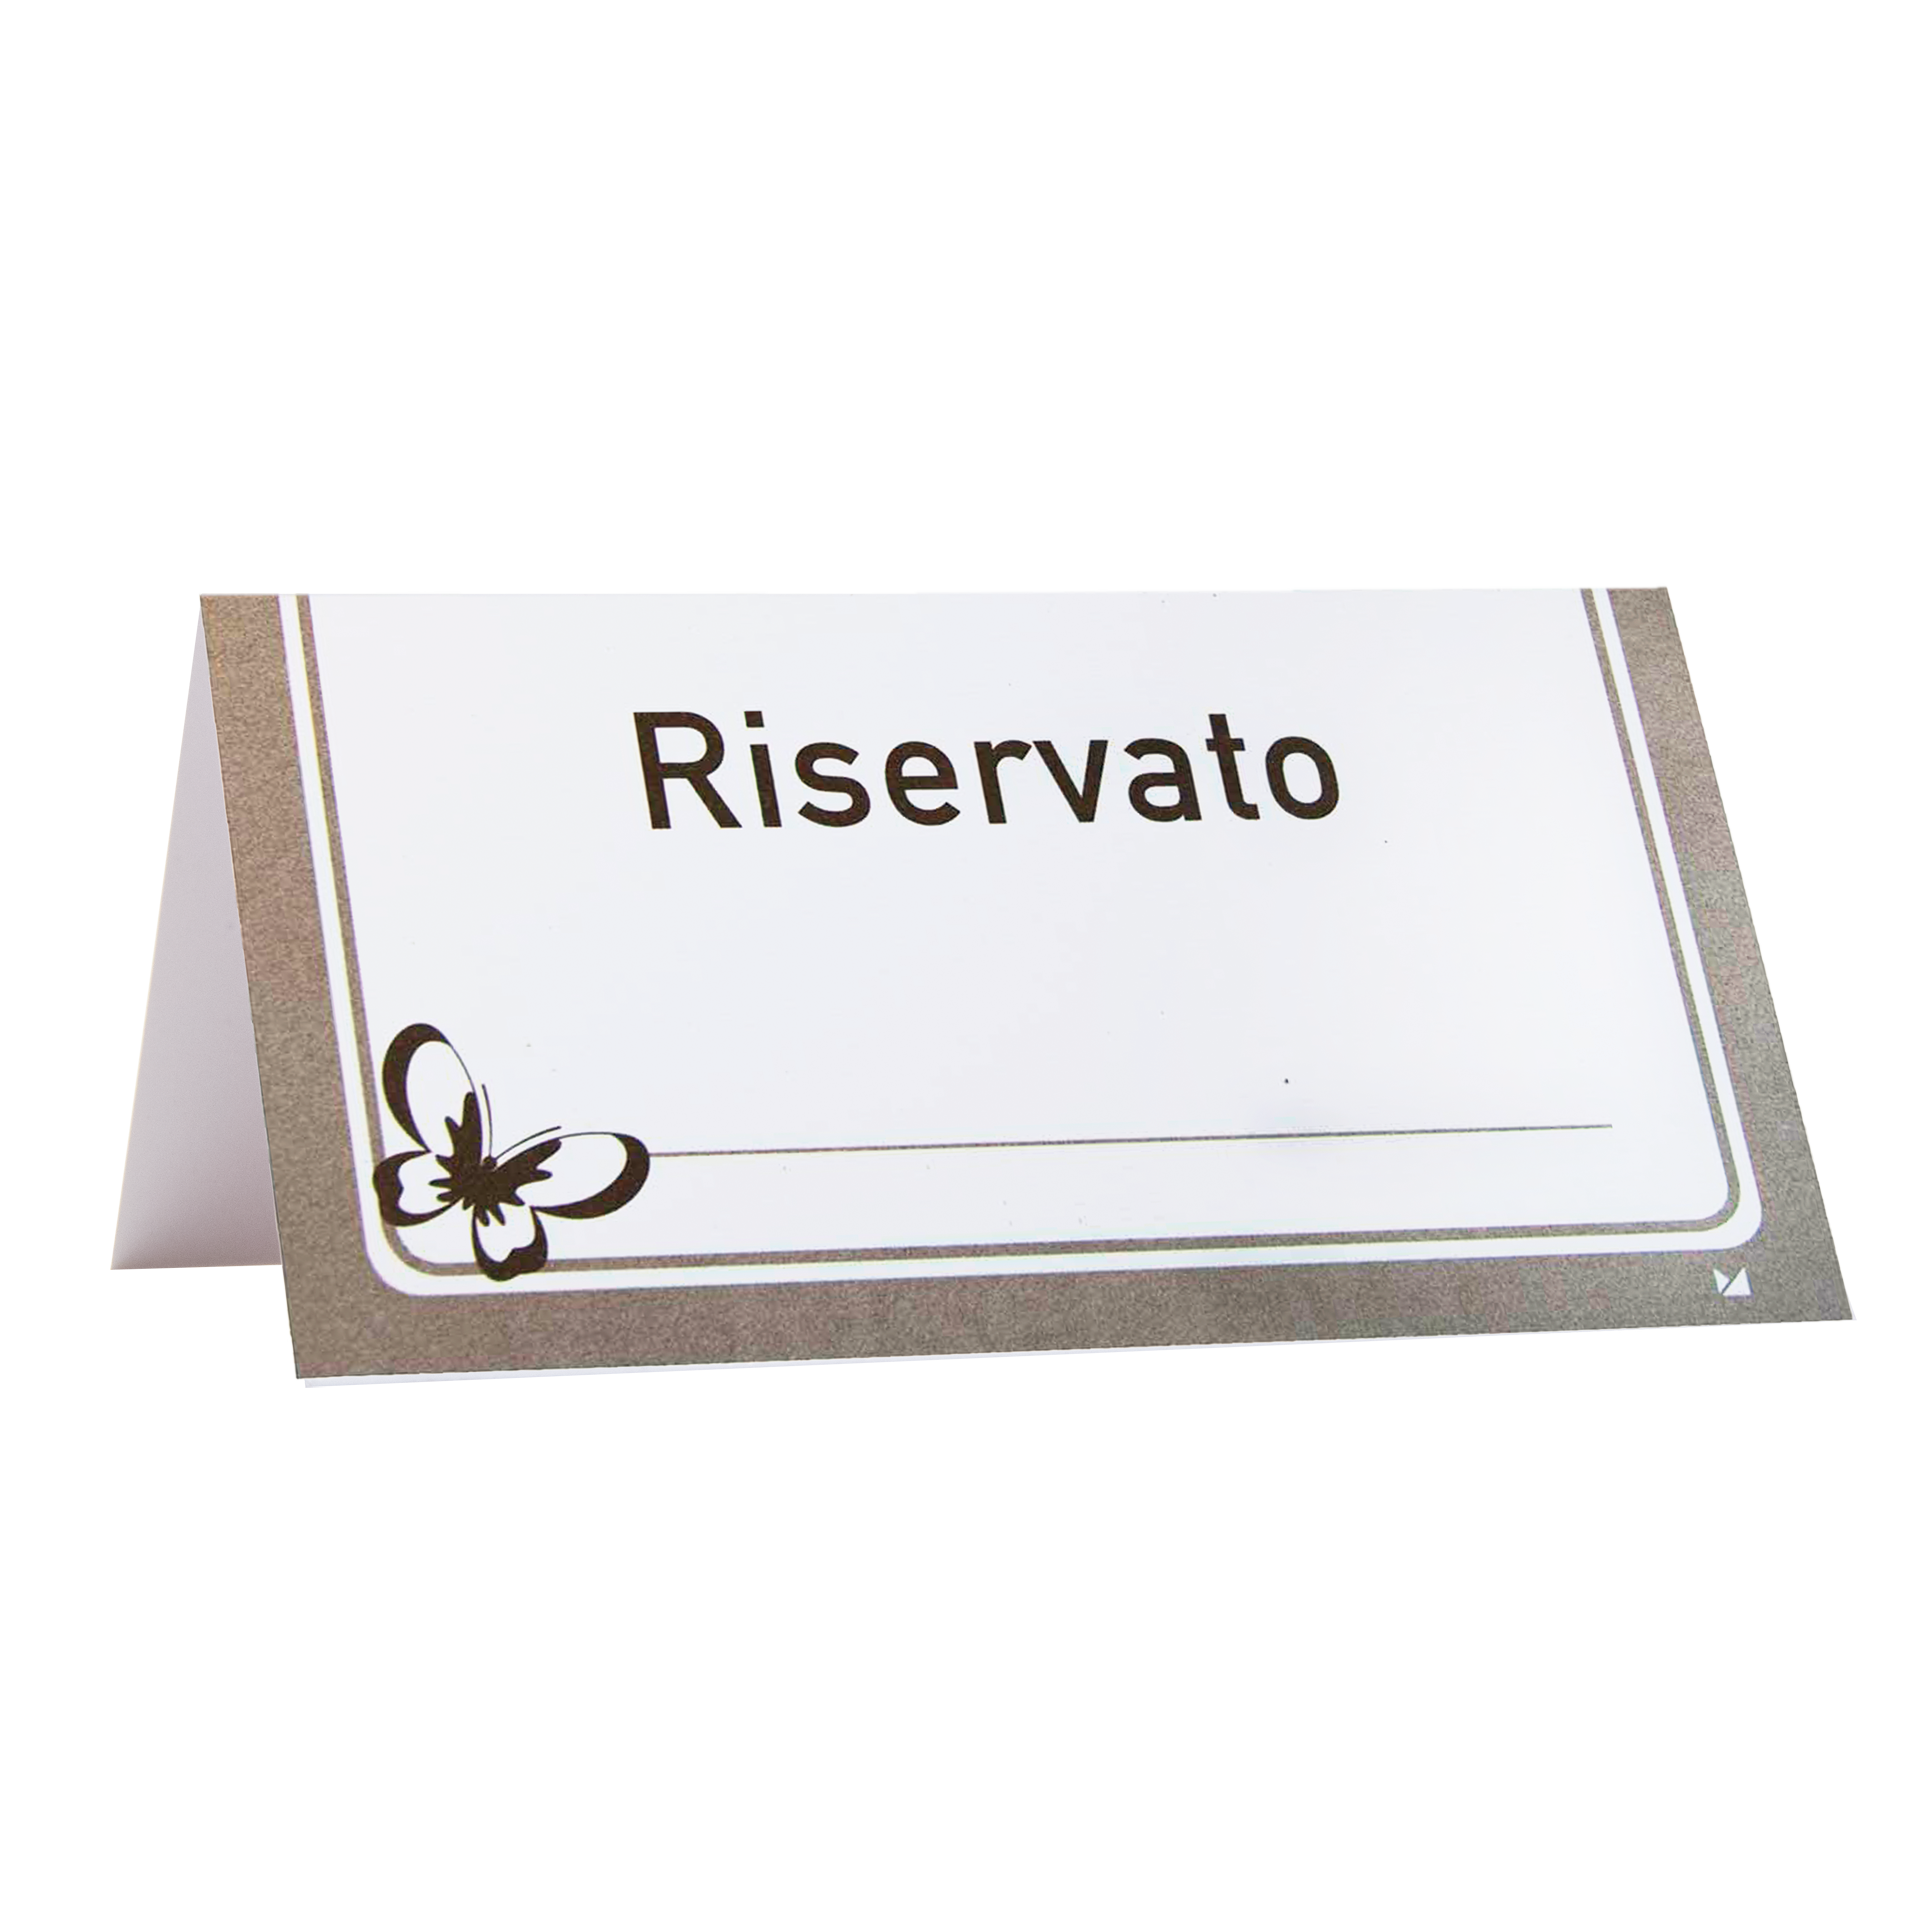 Reserviertkarte | 'Riservato/Reserved' Karton 300 g/m² 12x6,5 cm